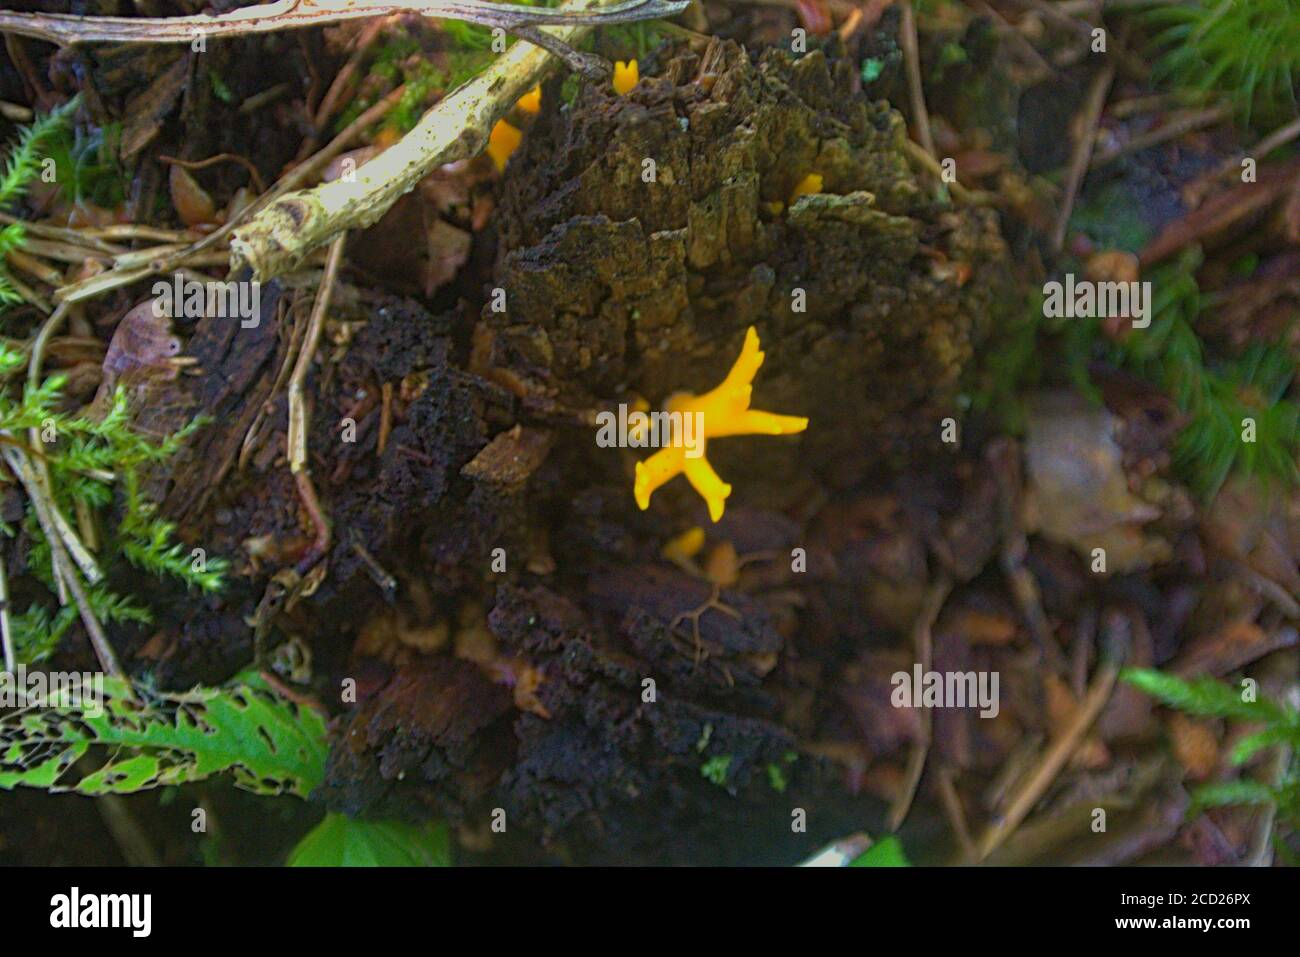 Un fungo giallo velenoso stupefacente che cresce naturalmente sulla corteccia dell'albero In una foresta polacca Foto Stock